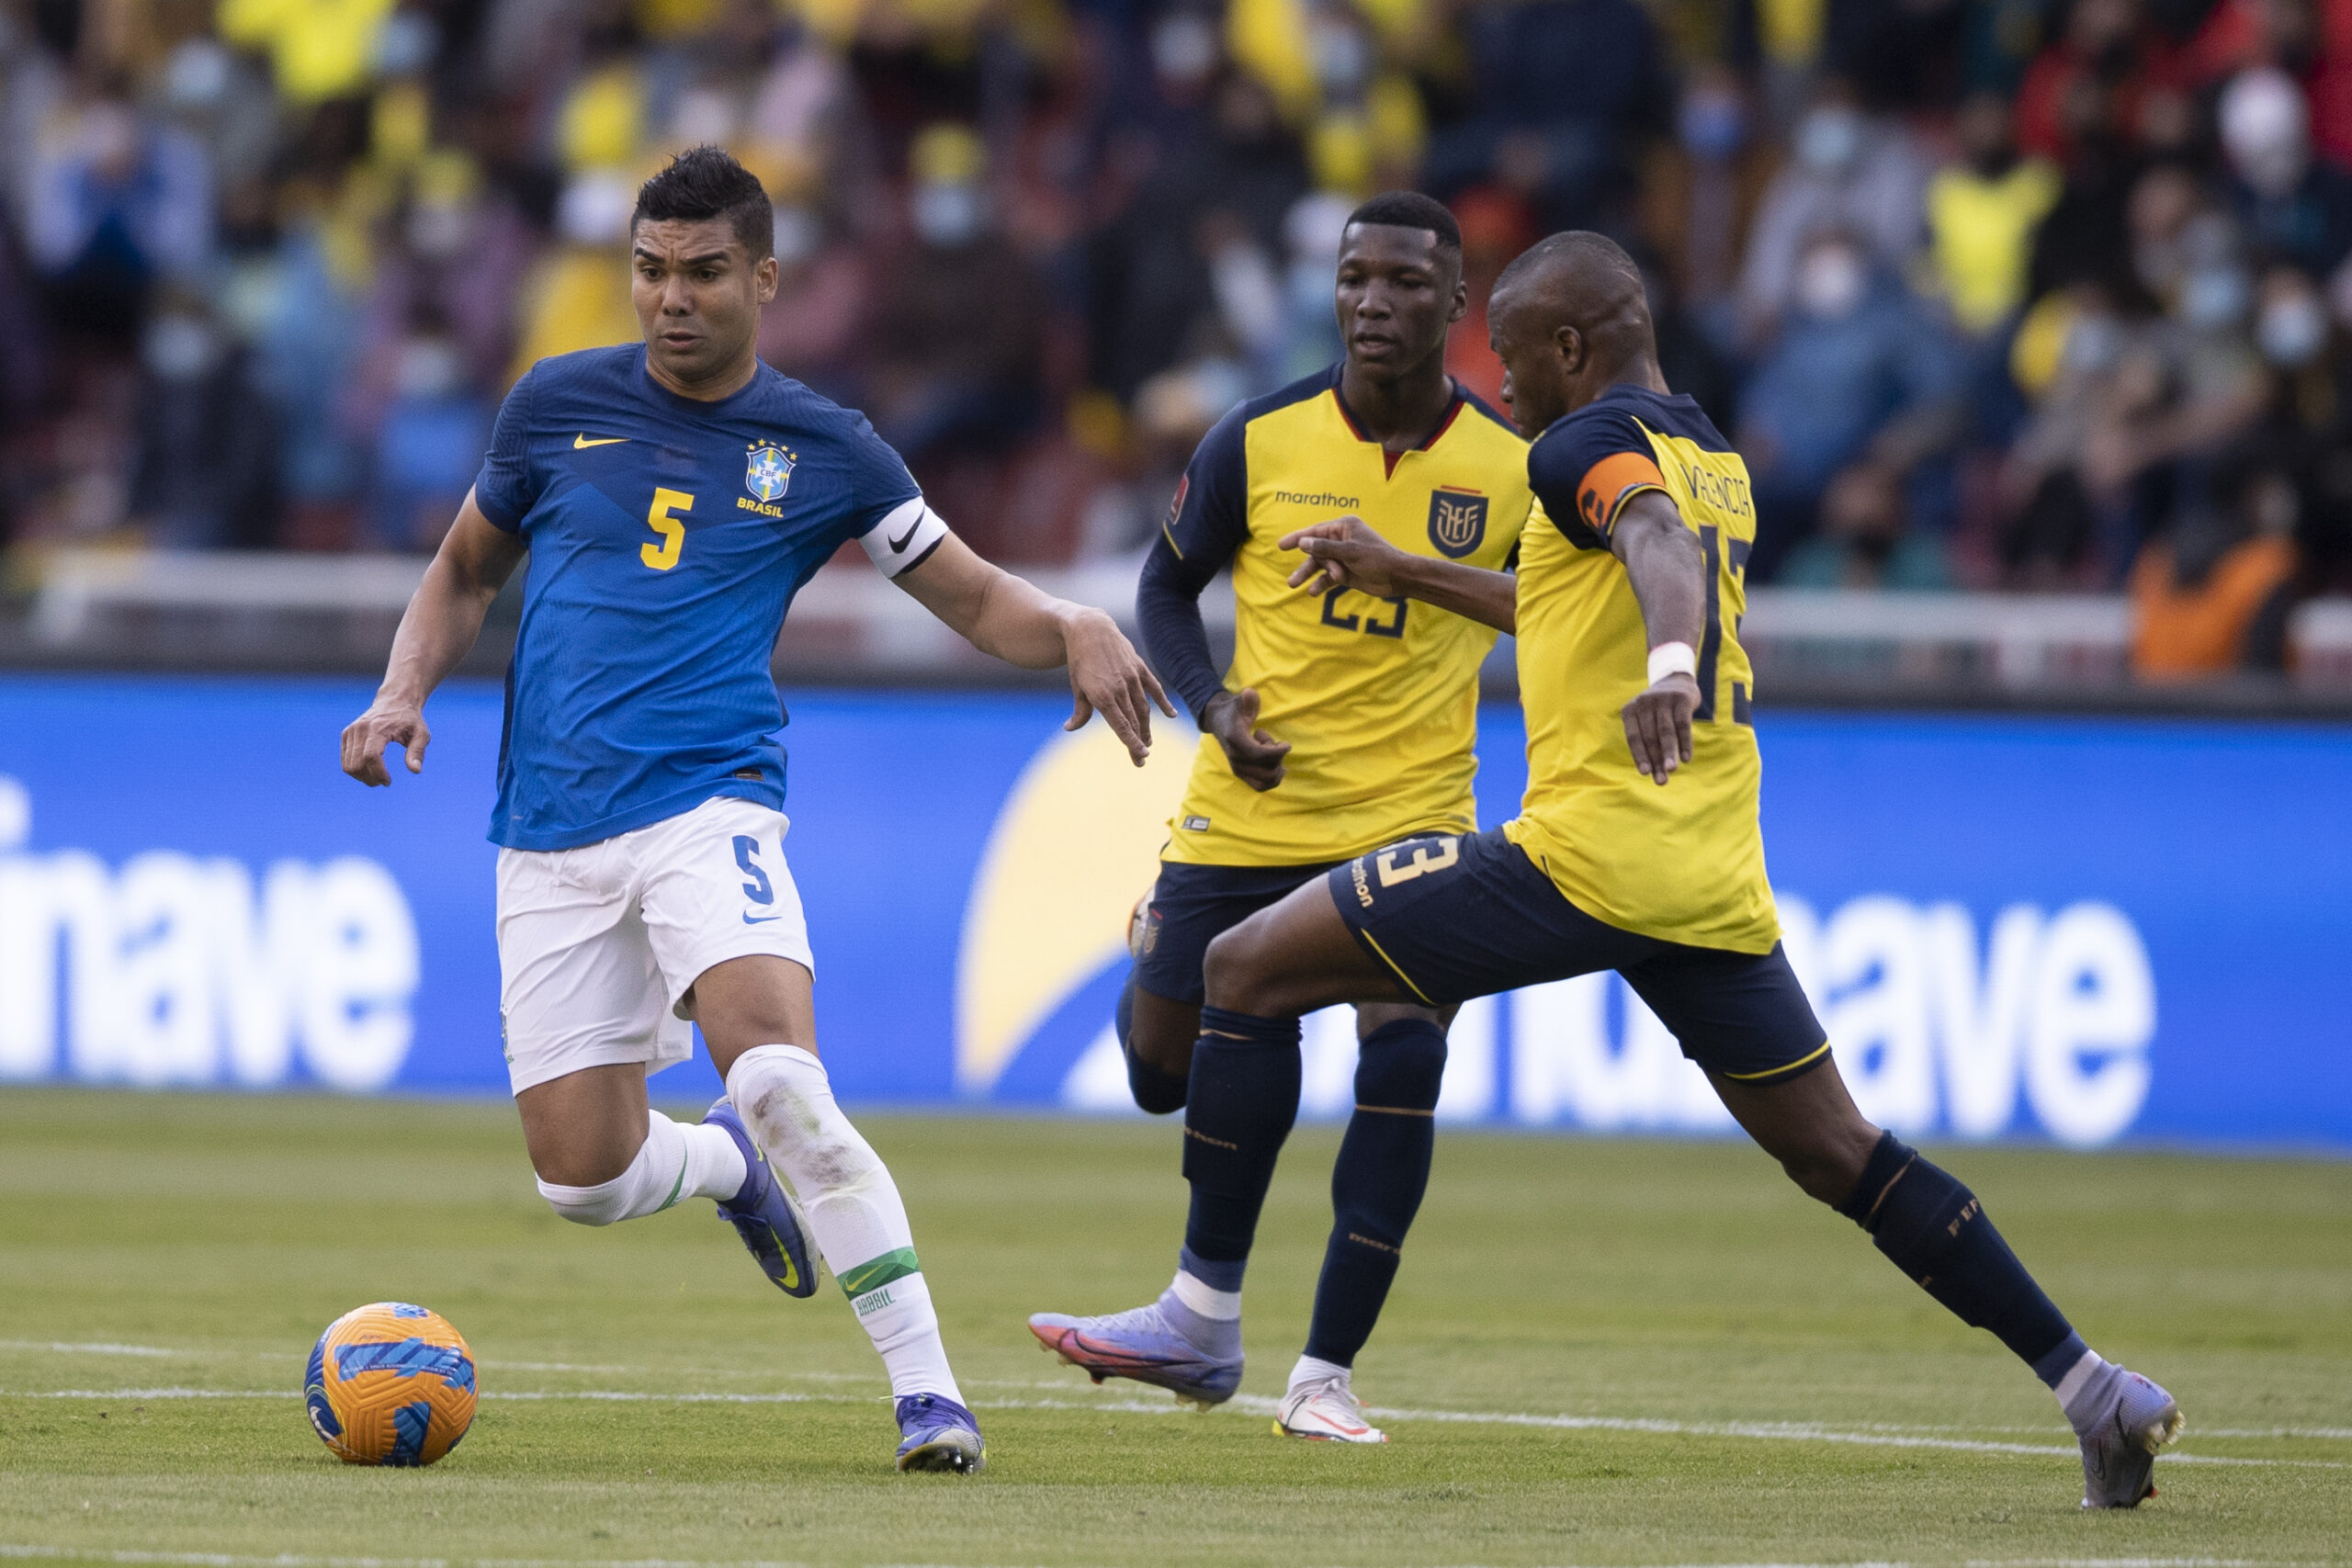 Resultado do jogo do Brasil hoje: em dia de VAR, seleção e Equador empatam